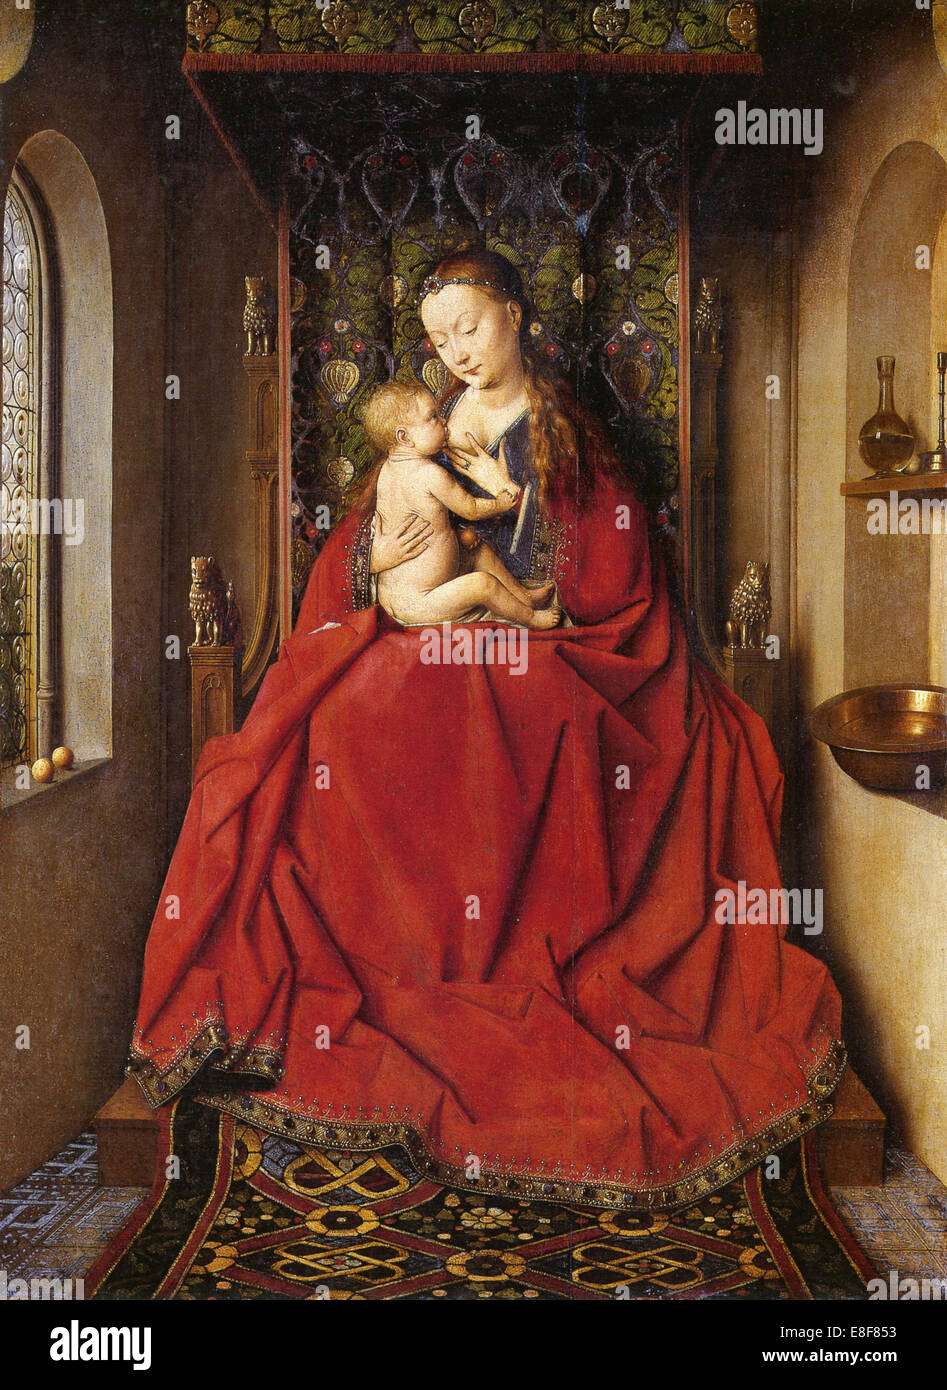 The Lucca Madonna. Artist: Eyck, Jan van (1390-1441) Stock Photo